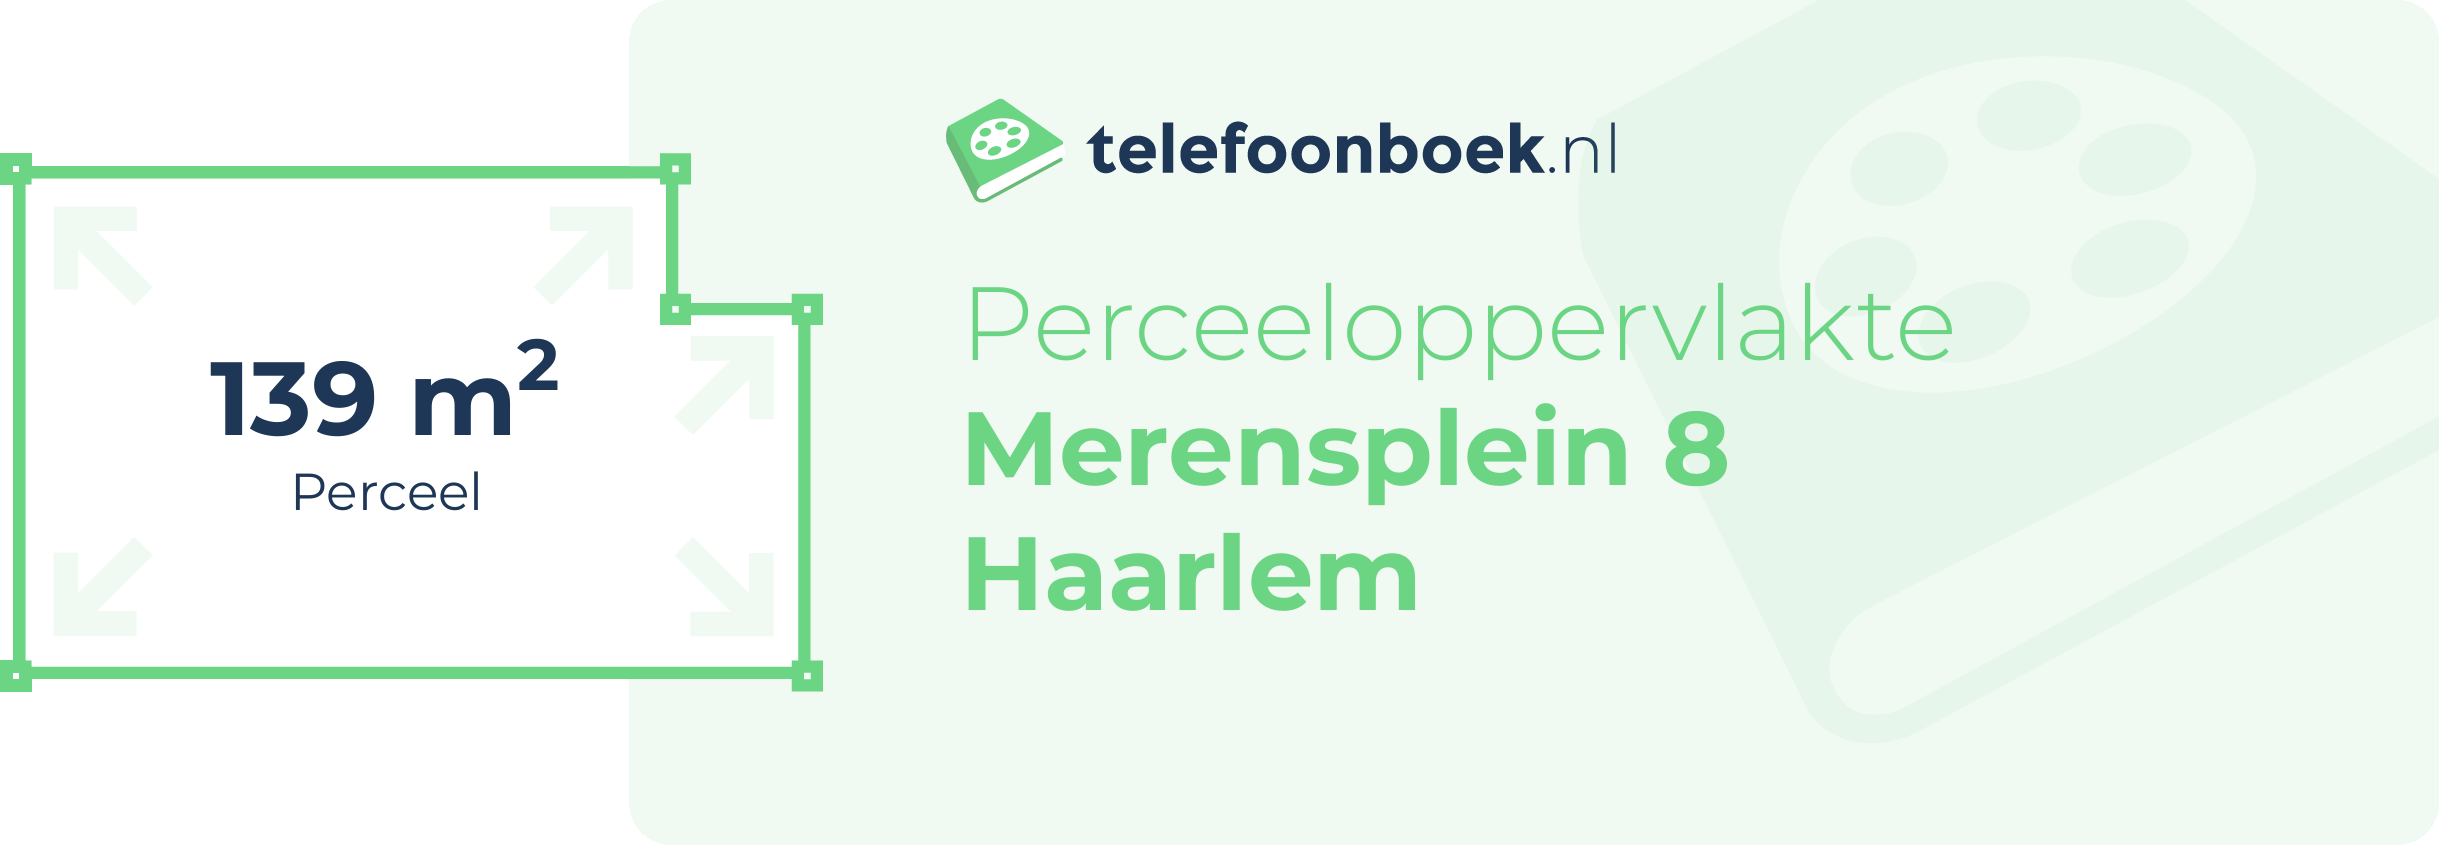 Perceeloppervlakte Merensplein 8 Haarlem